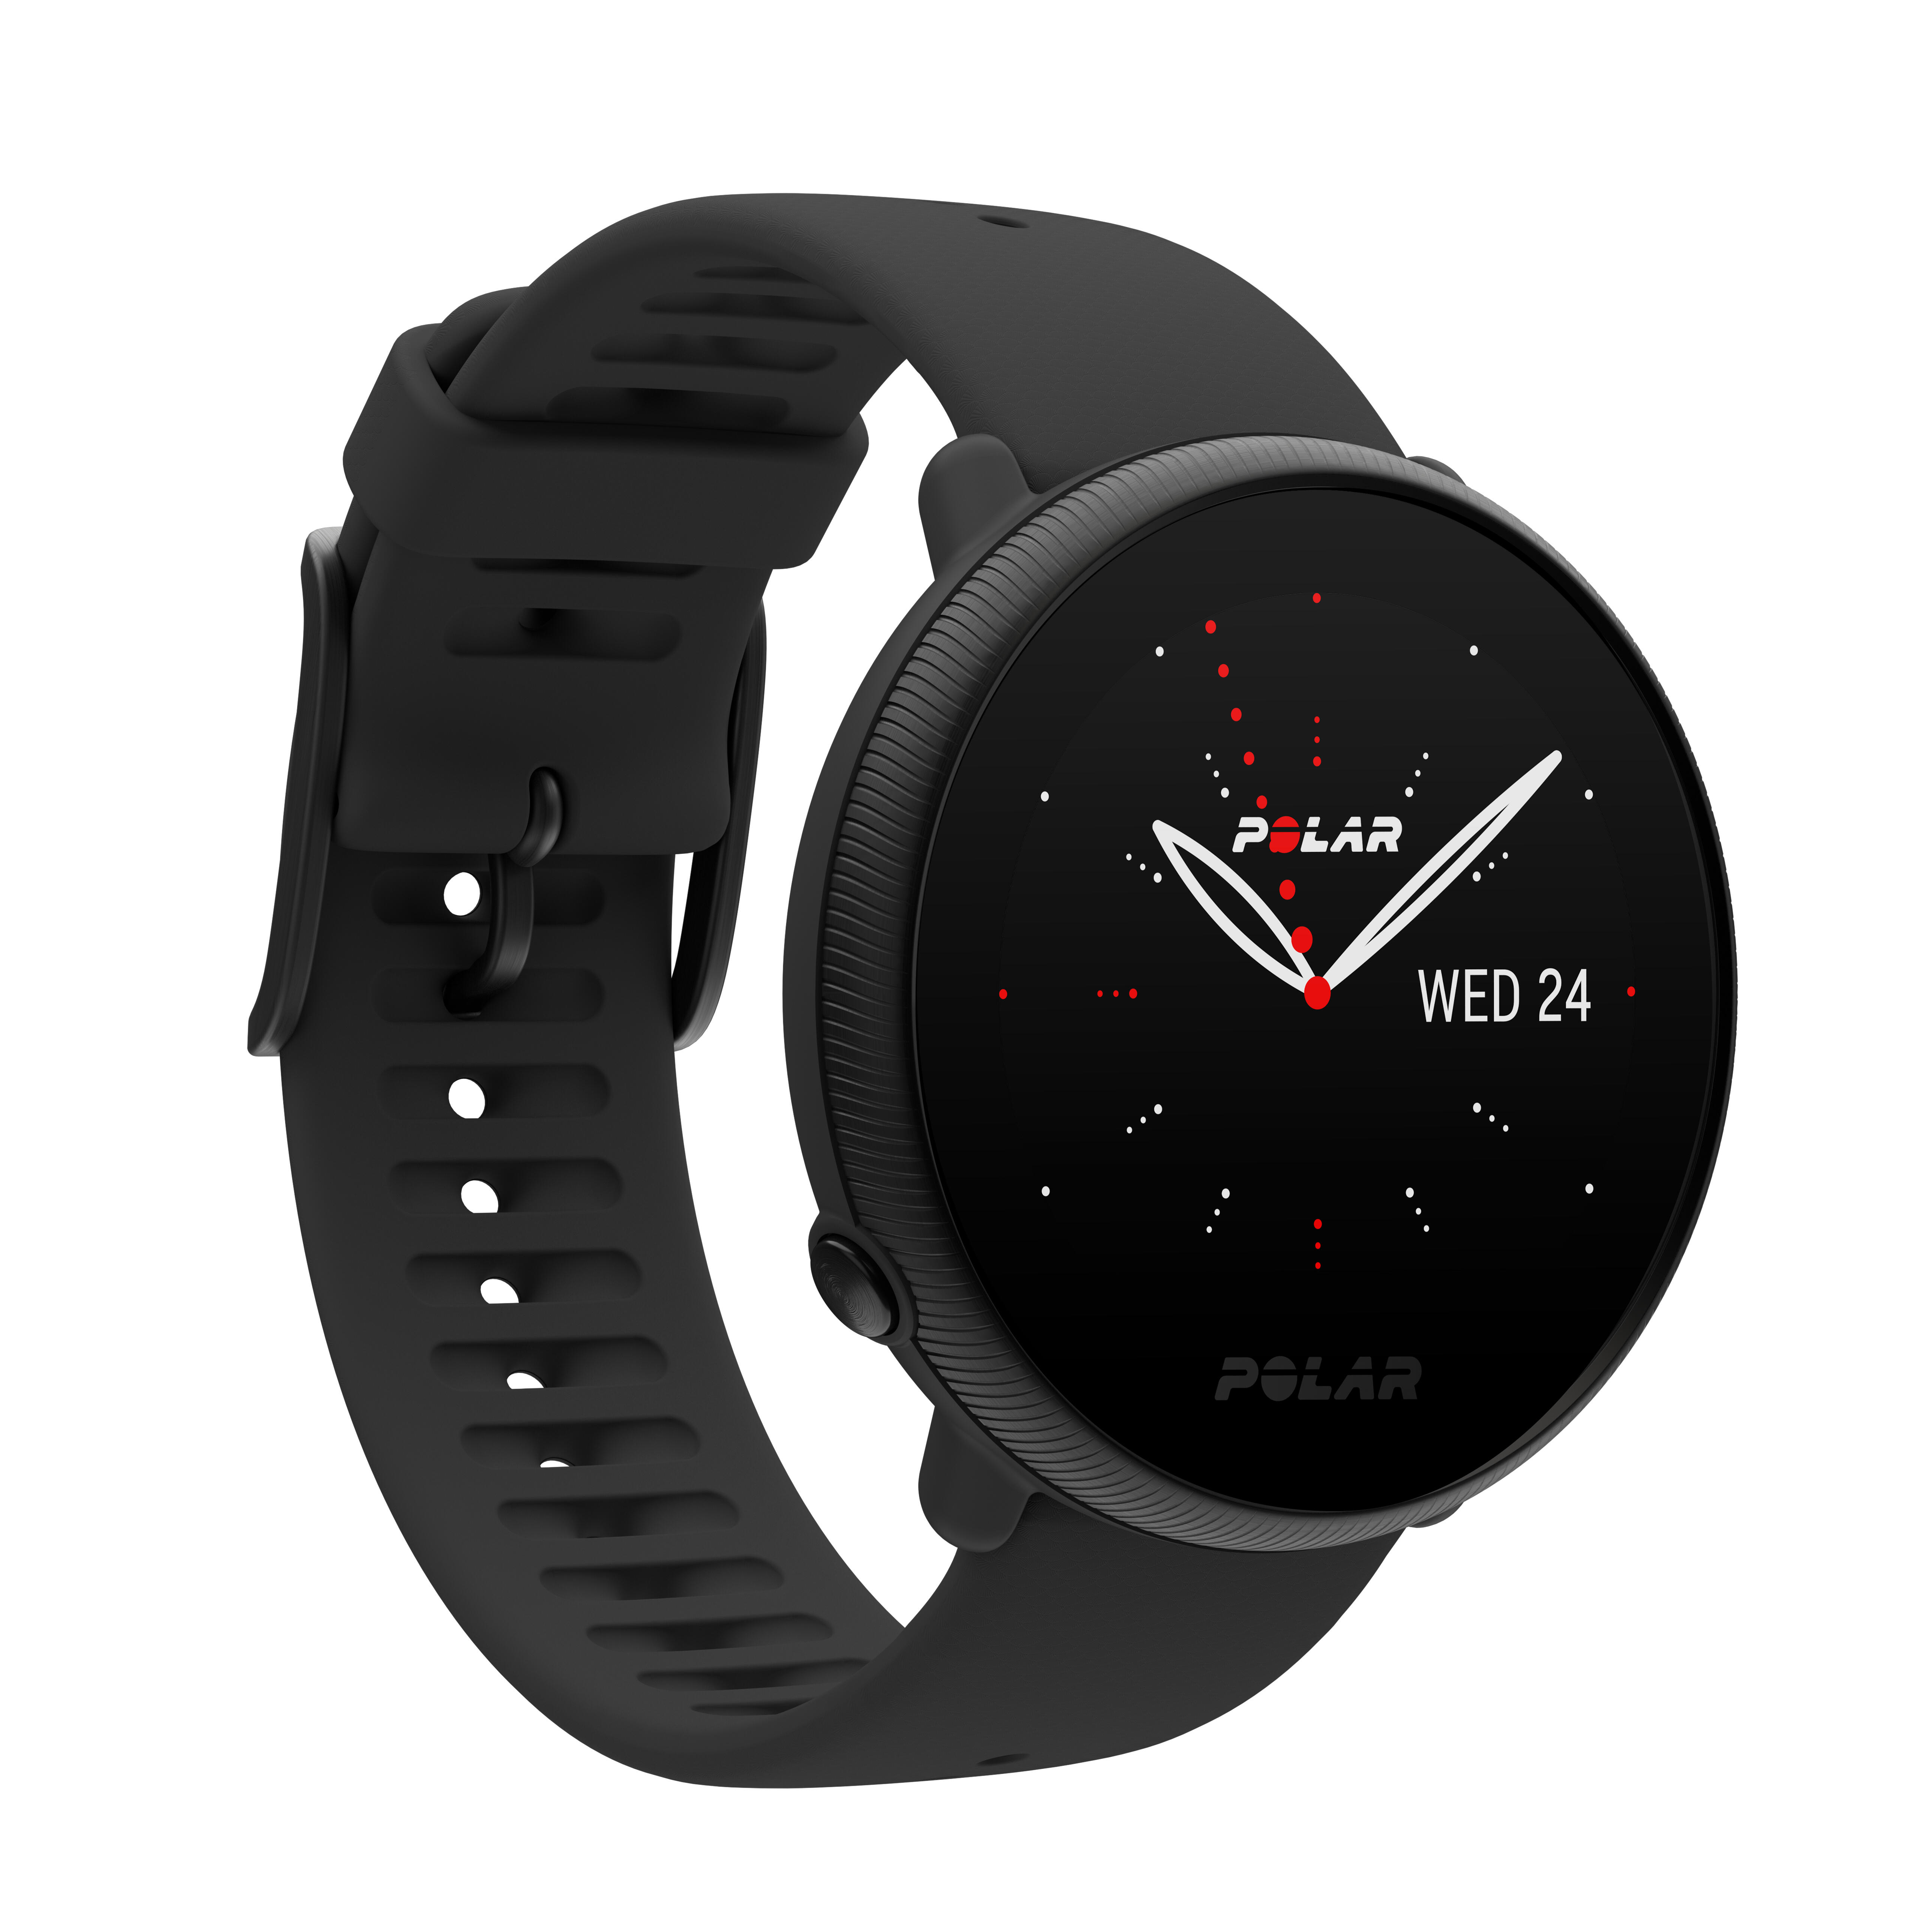 Smartwatch voor fitness met gps en hartslagsensor ignite 2 zwart